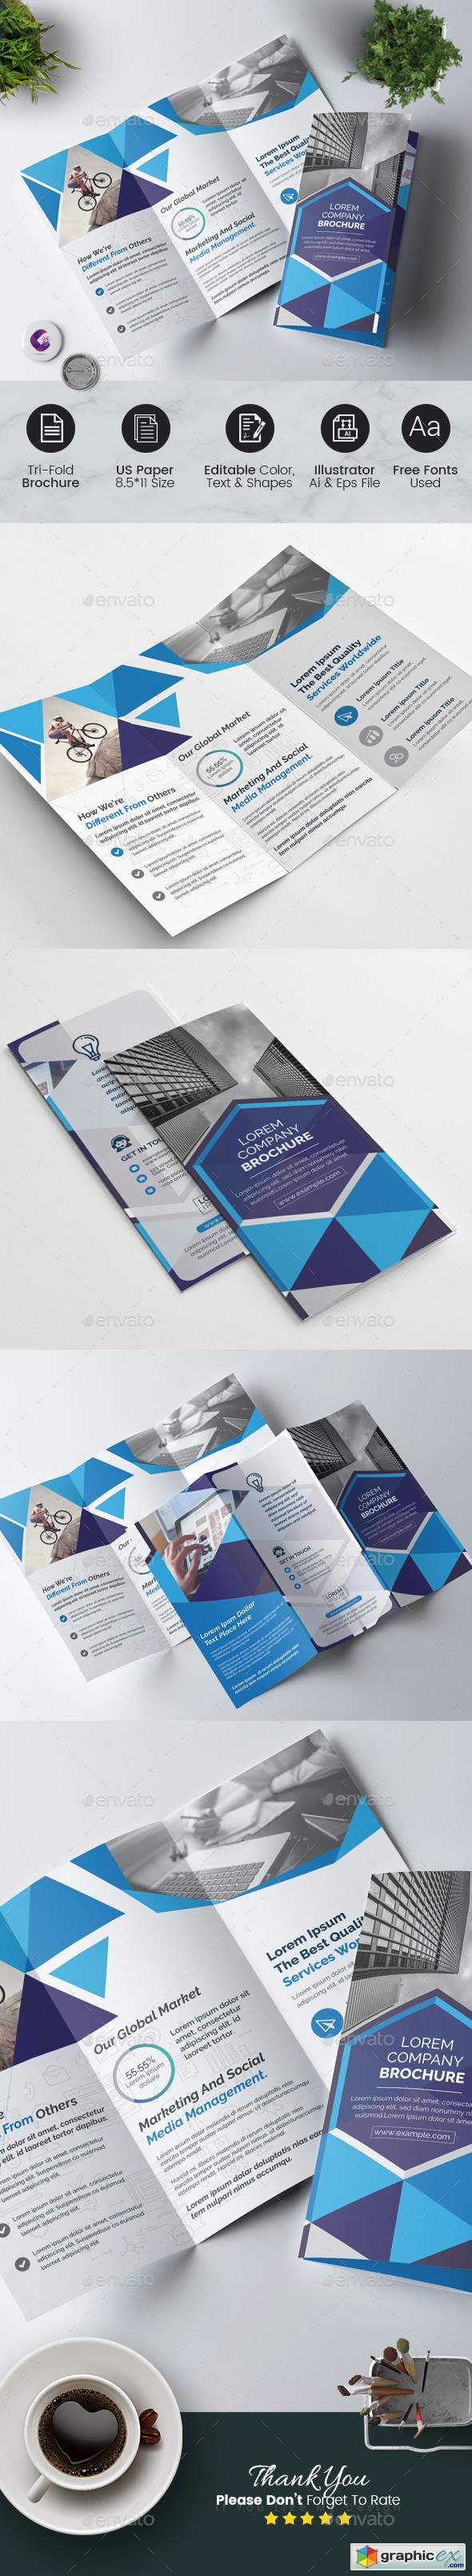 Geometric Tri-Fold Brochure 22568846